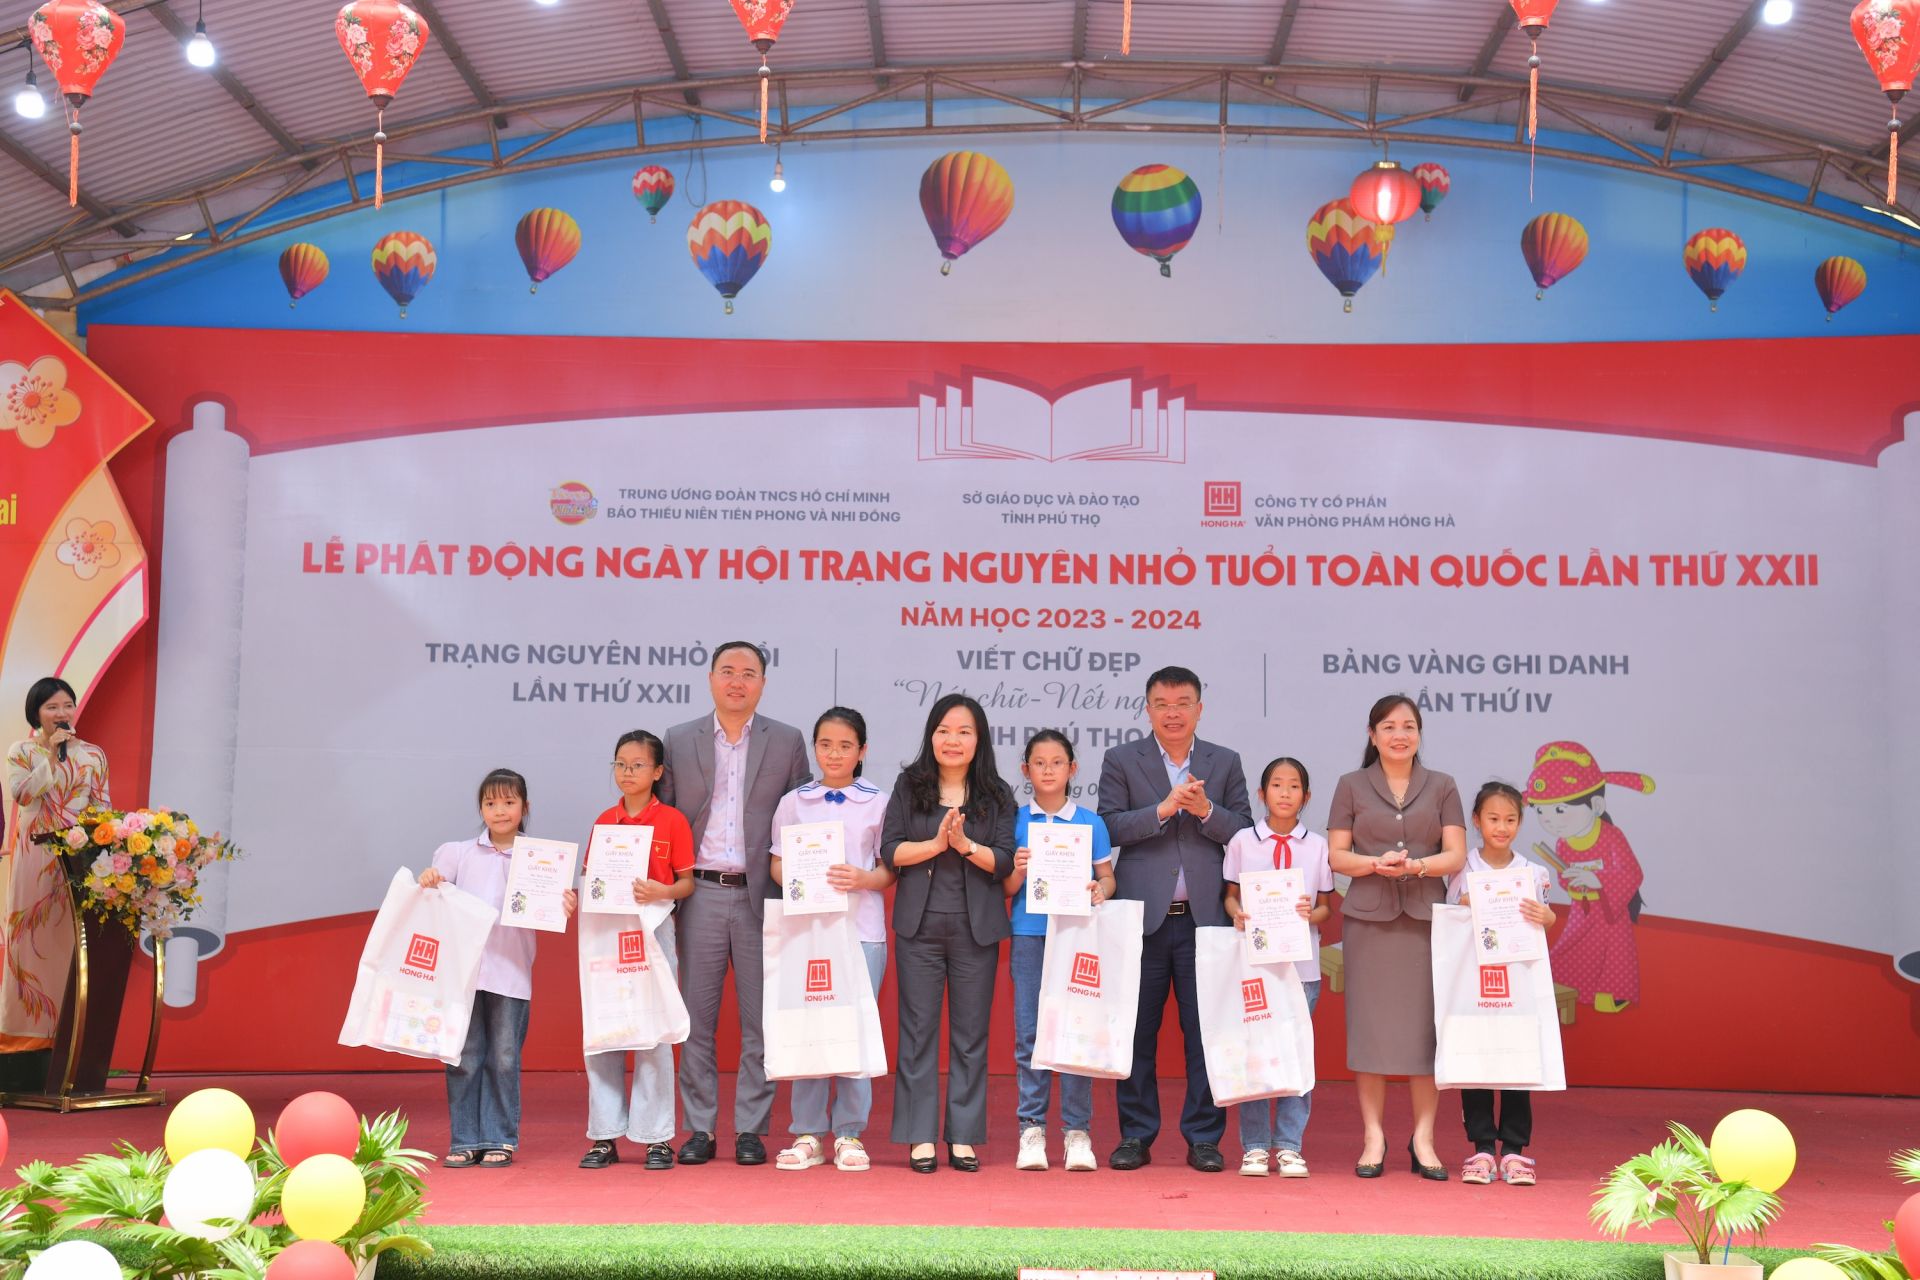 Nhà giáo Nguyễn Thị Thu Huyền, Nhà văn, nhà báo Nguyễn Phan Khuê và ông Phạm Trung Kiên trao giải Nhất cho 6 bạn thí sinh xuất sắc.